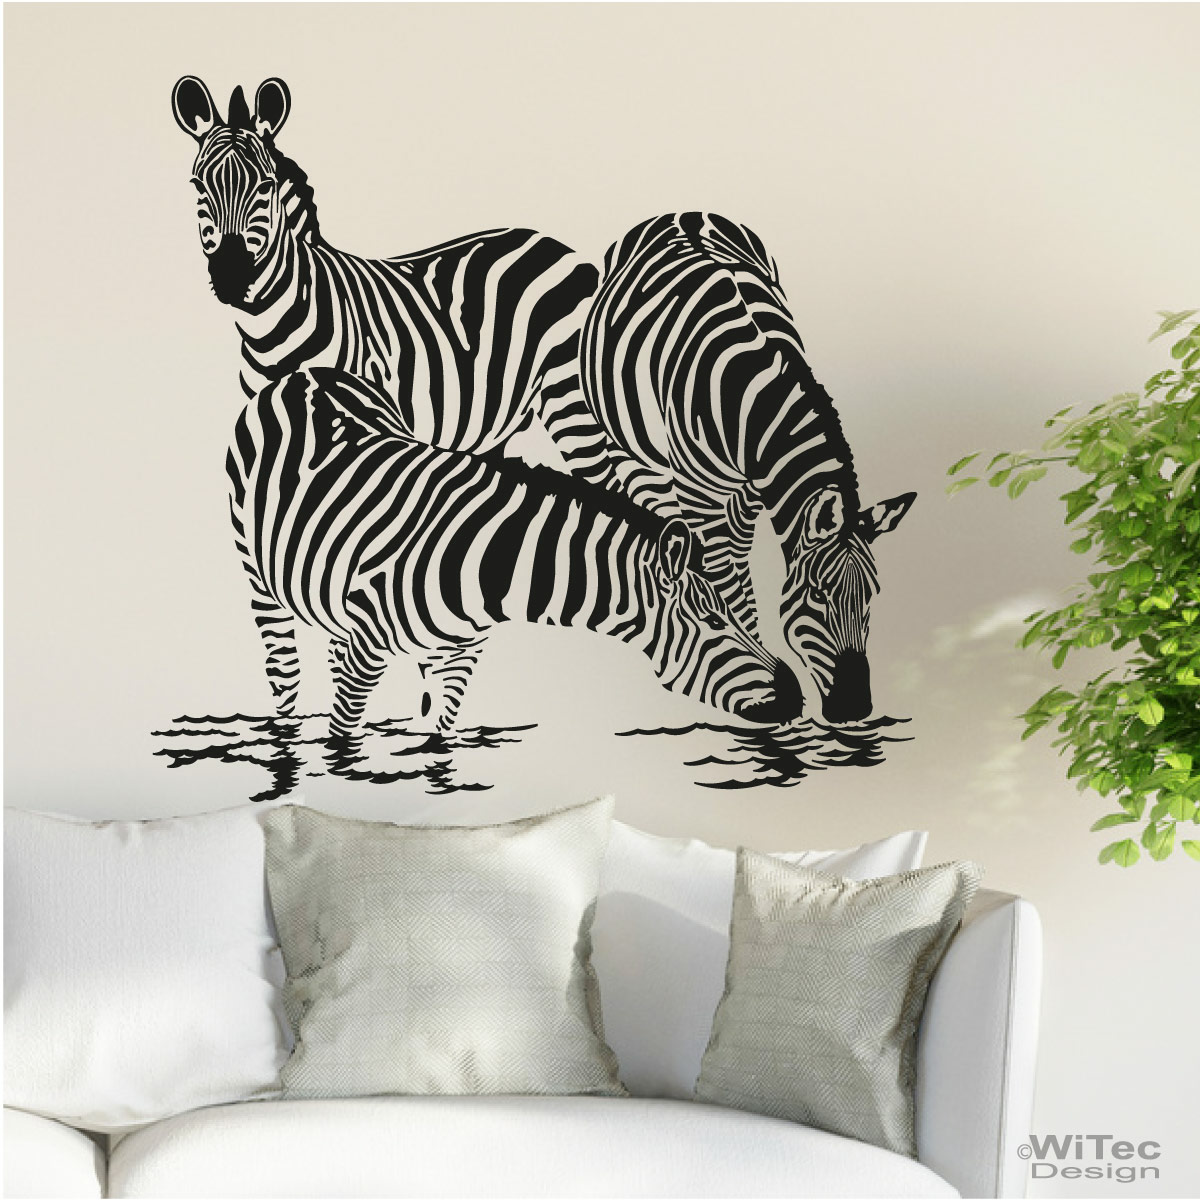 Wanddekoration Wandaufkleber Wandsticker Wandtattoo Zebra Afrika Retro